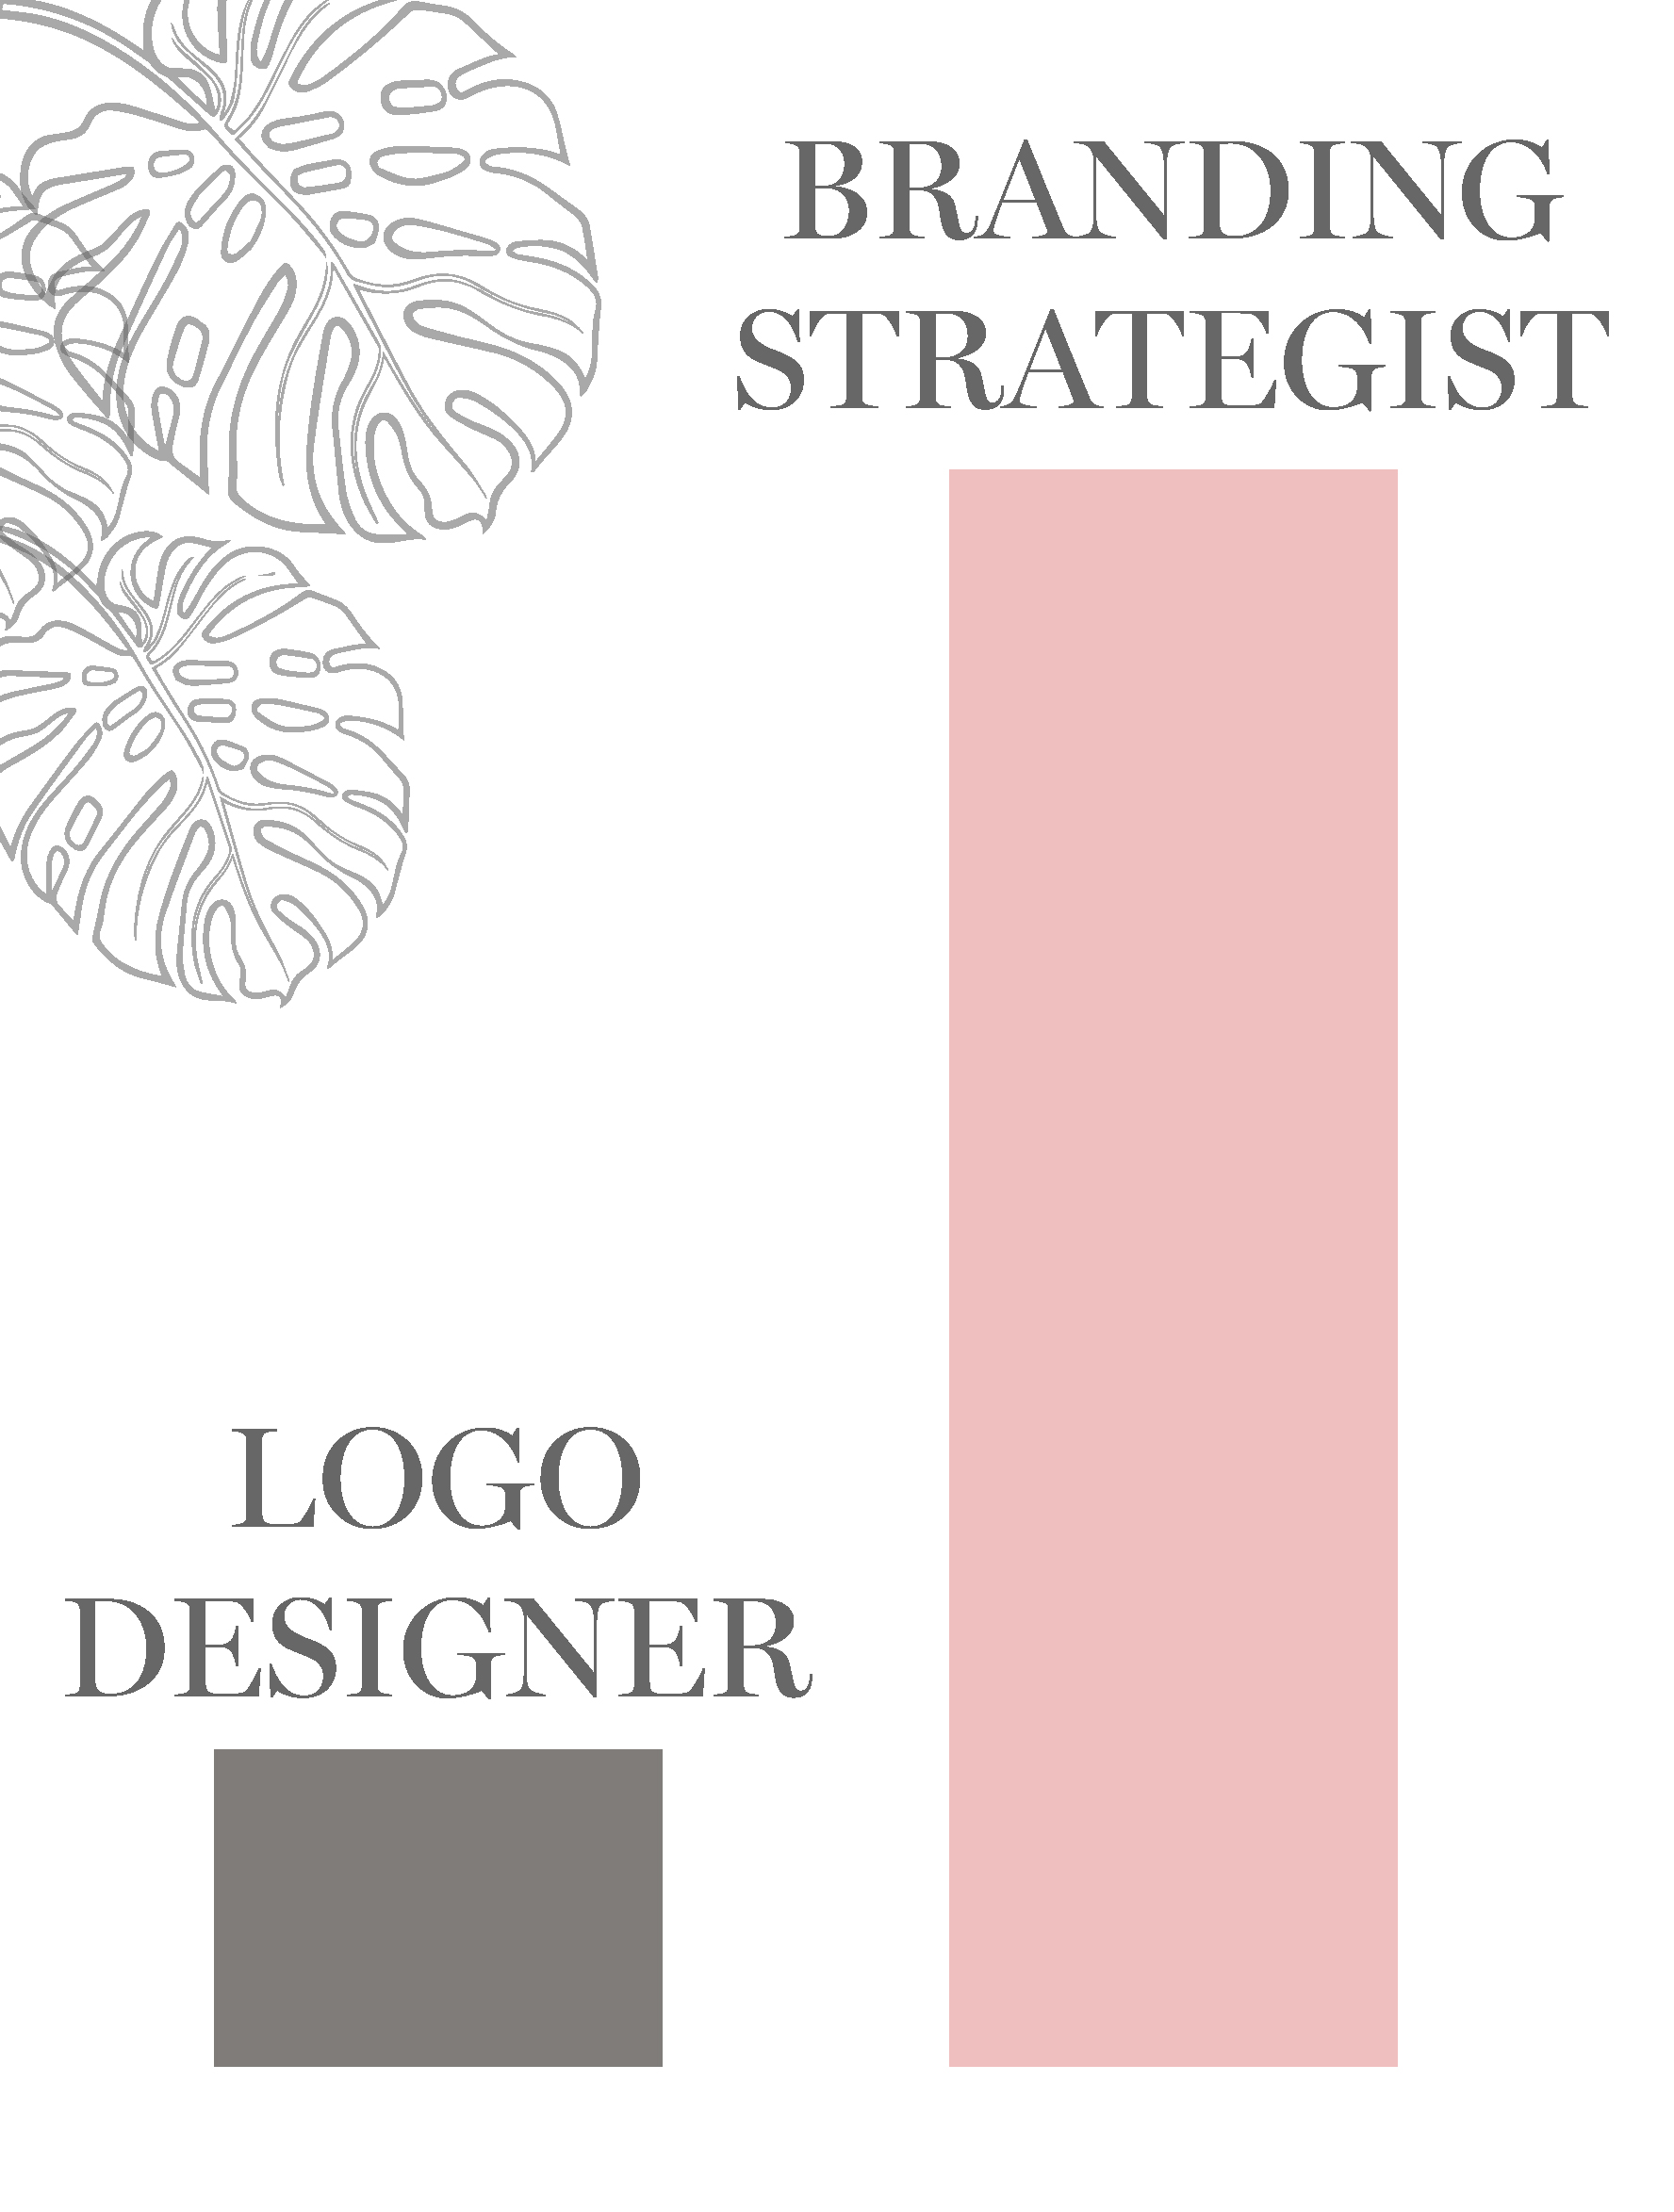 Should You Hire a Logo Designer or Branding Strategist?